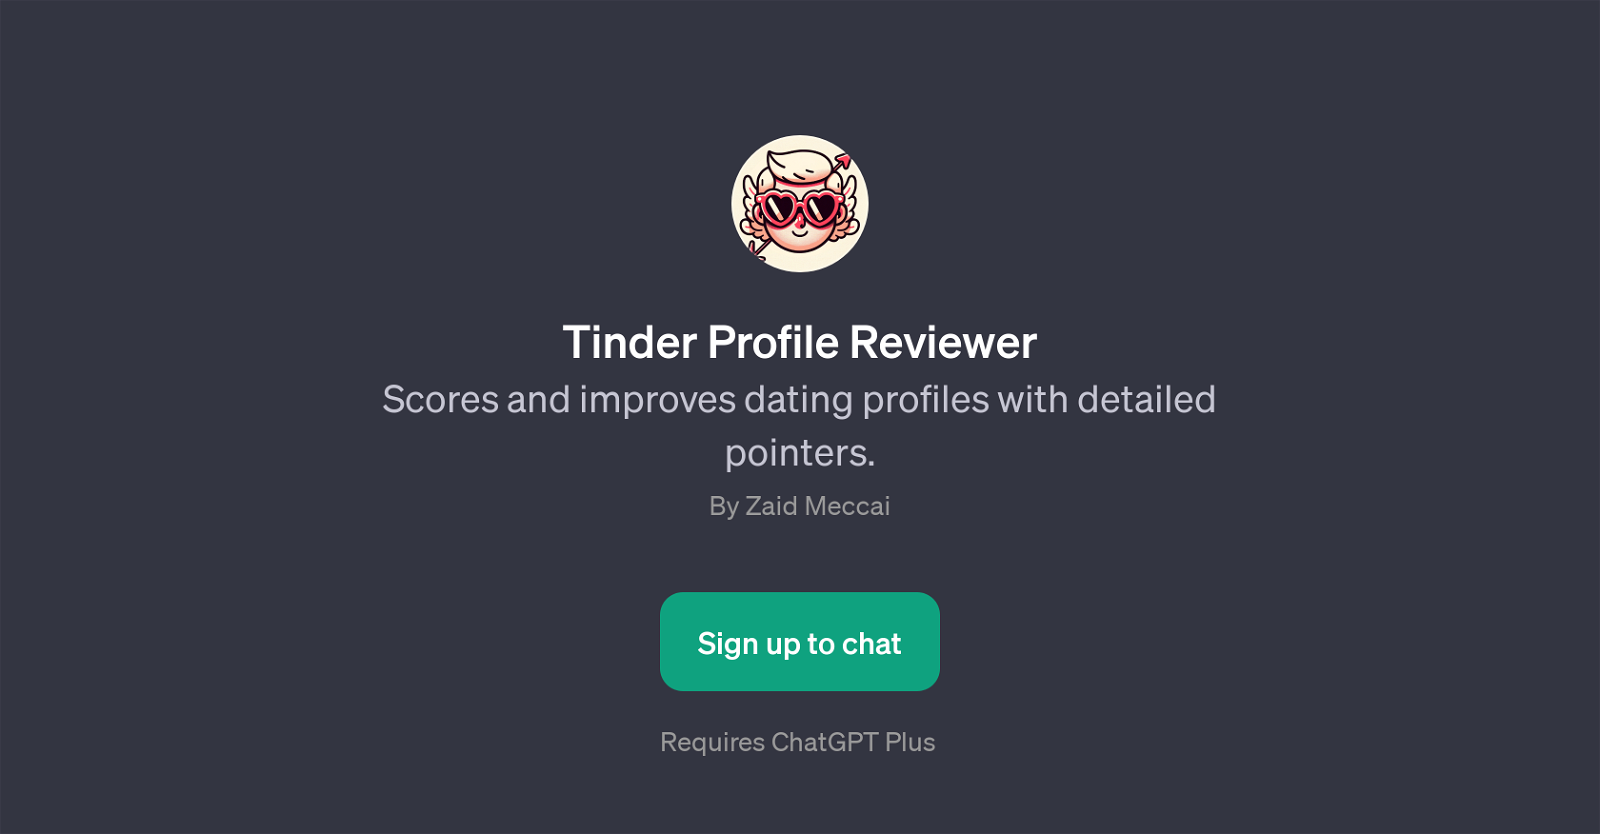 Tinder Profile Reviewer website